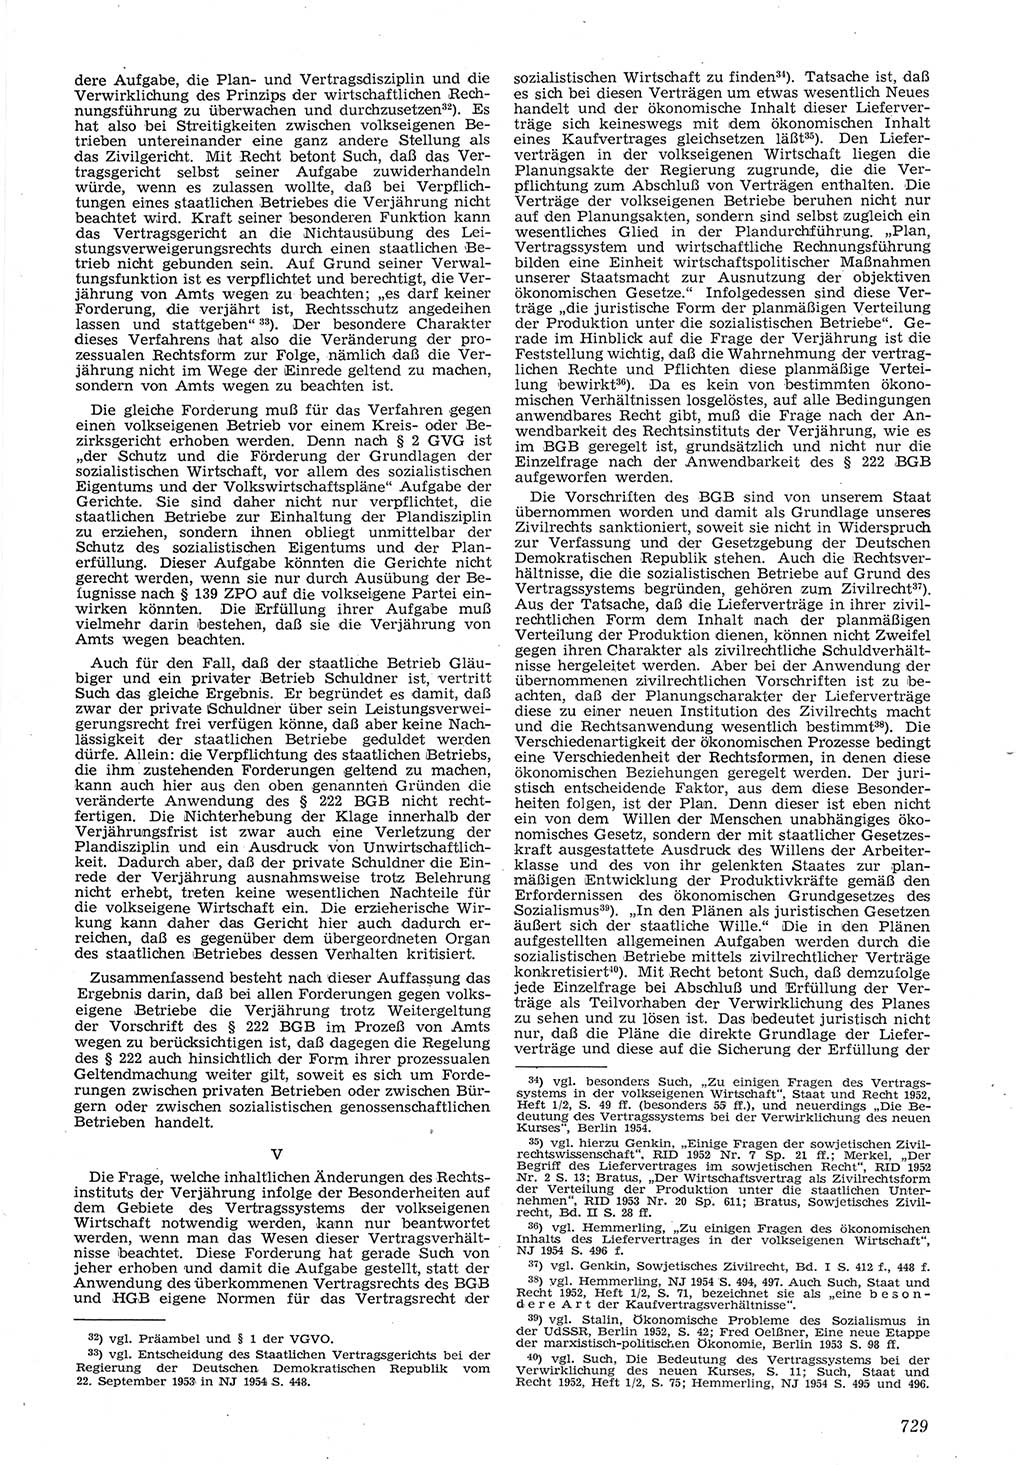 Neue Justiz (NJ), Zeitschrift für Recht und Rechtswissenschaft [Deutsche Demokratische Republik (DDR)], 8. Jahrgang 1954, Seite 729 (NJ DDR 1954, S. 729)